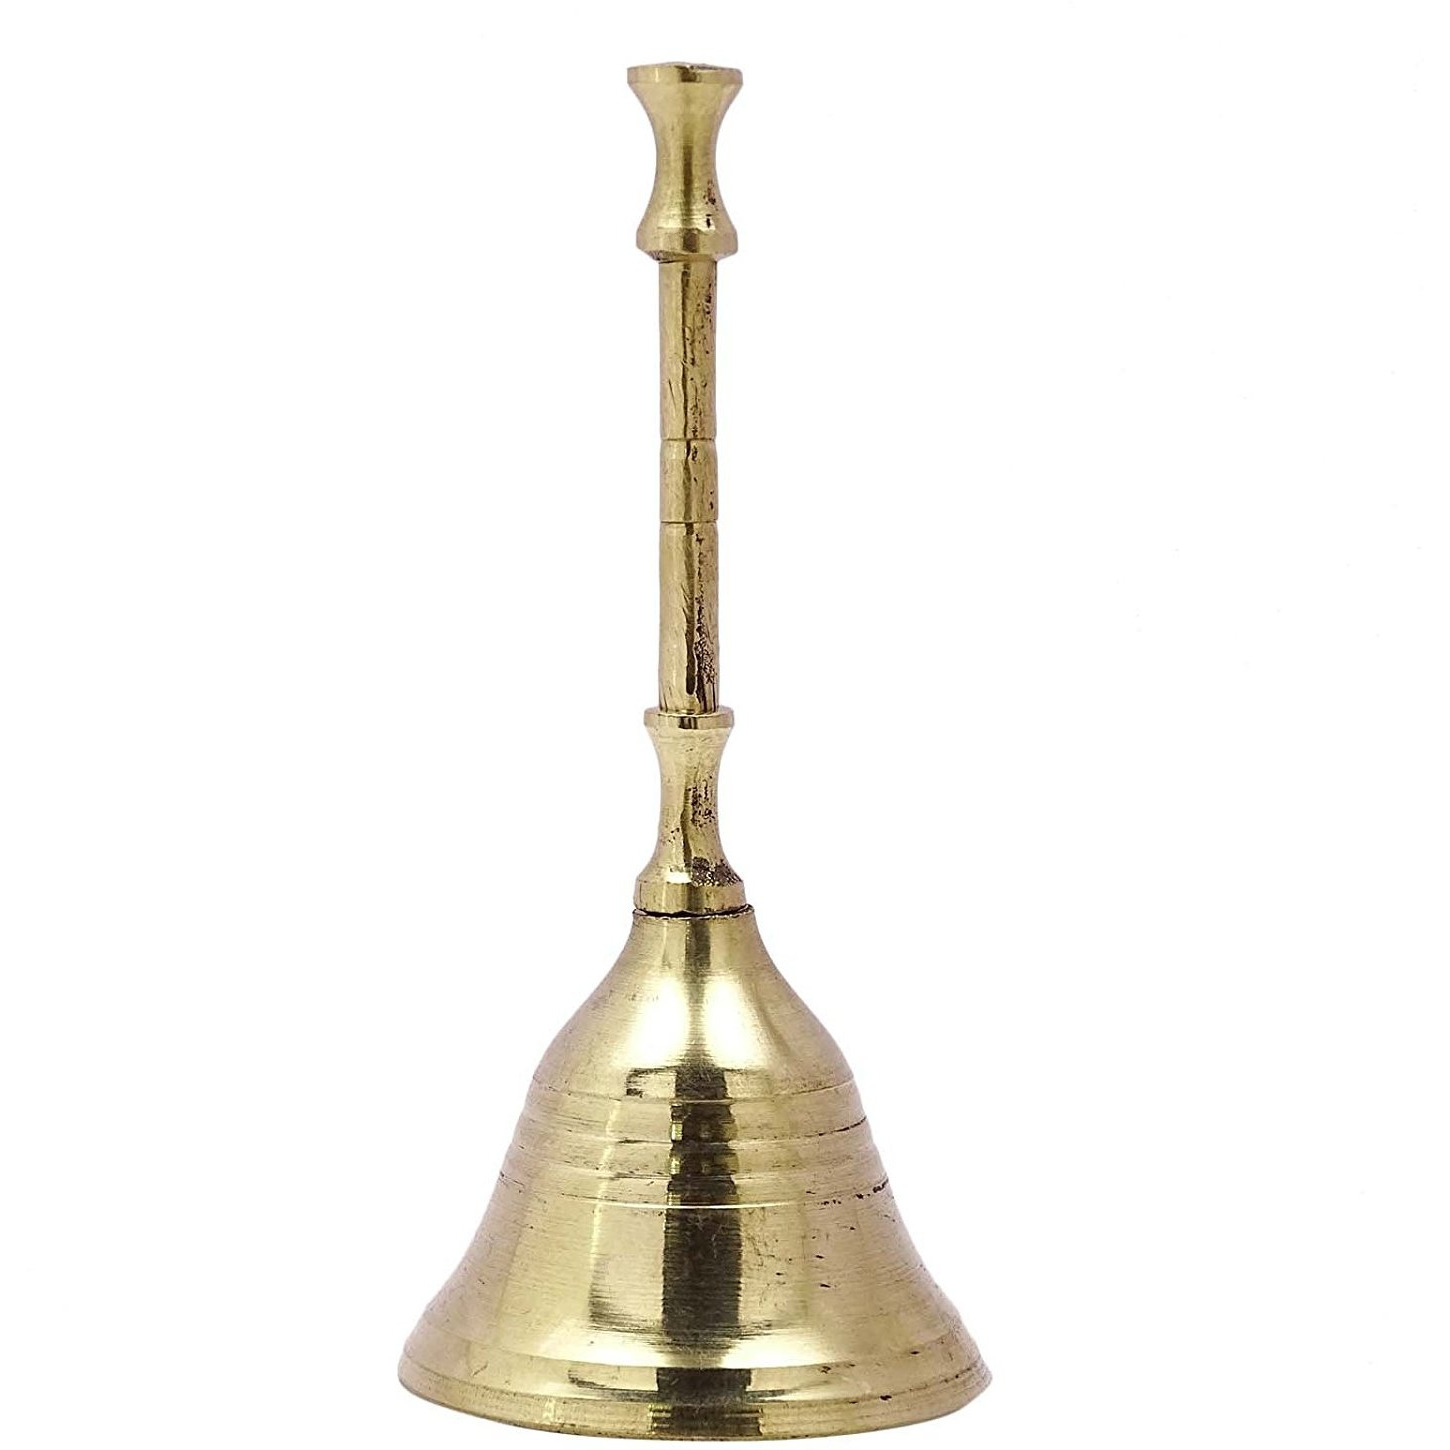 Winmaarc Traditional Religious Brass Gold Tone Hand Bell Handmade Prayer Bell Metal Art